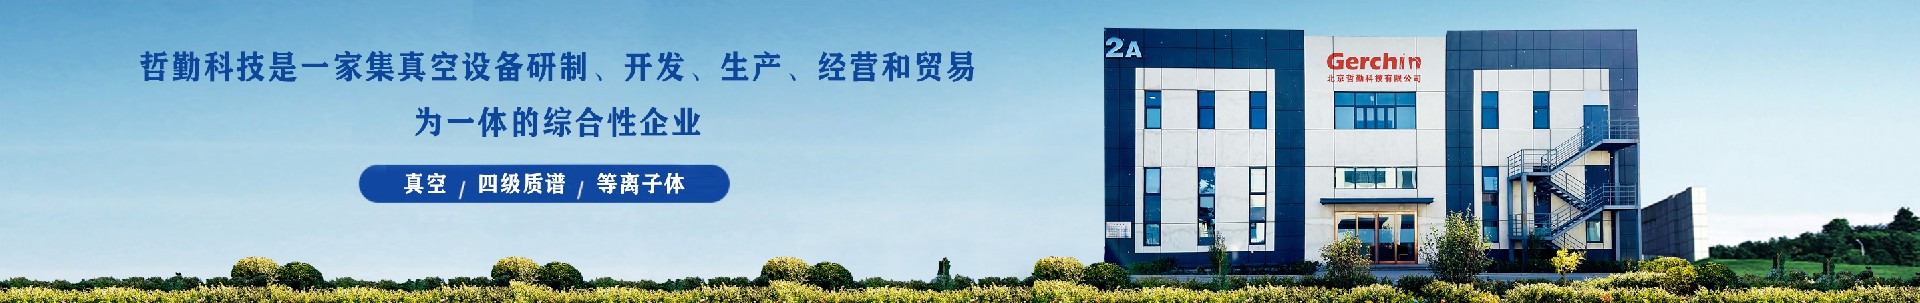 企业文化-北京哲勤科技有限公司